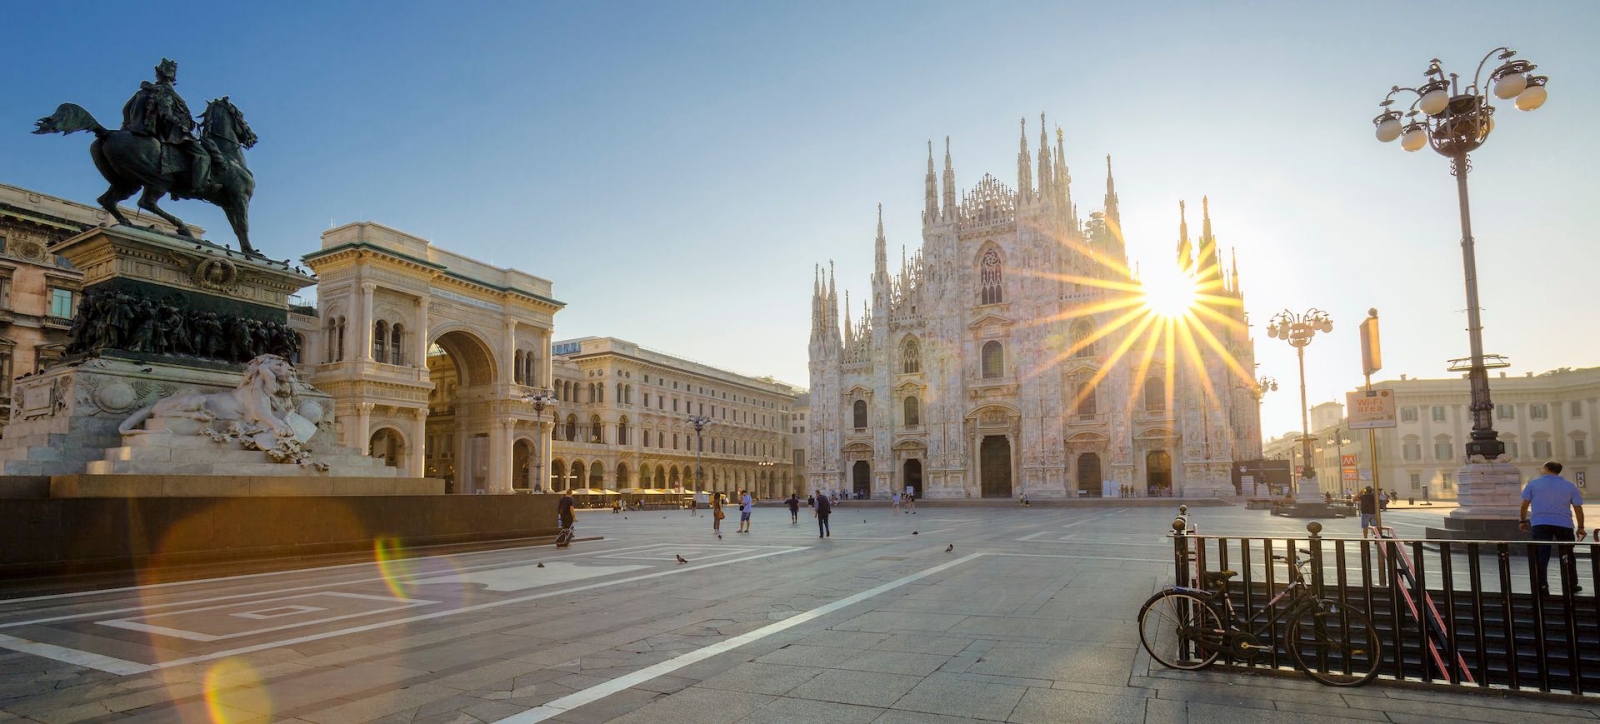 Famous Duomo in Milan at sunrise